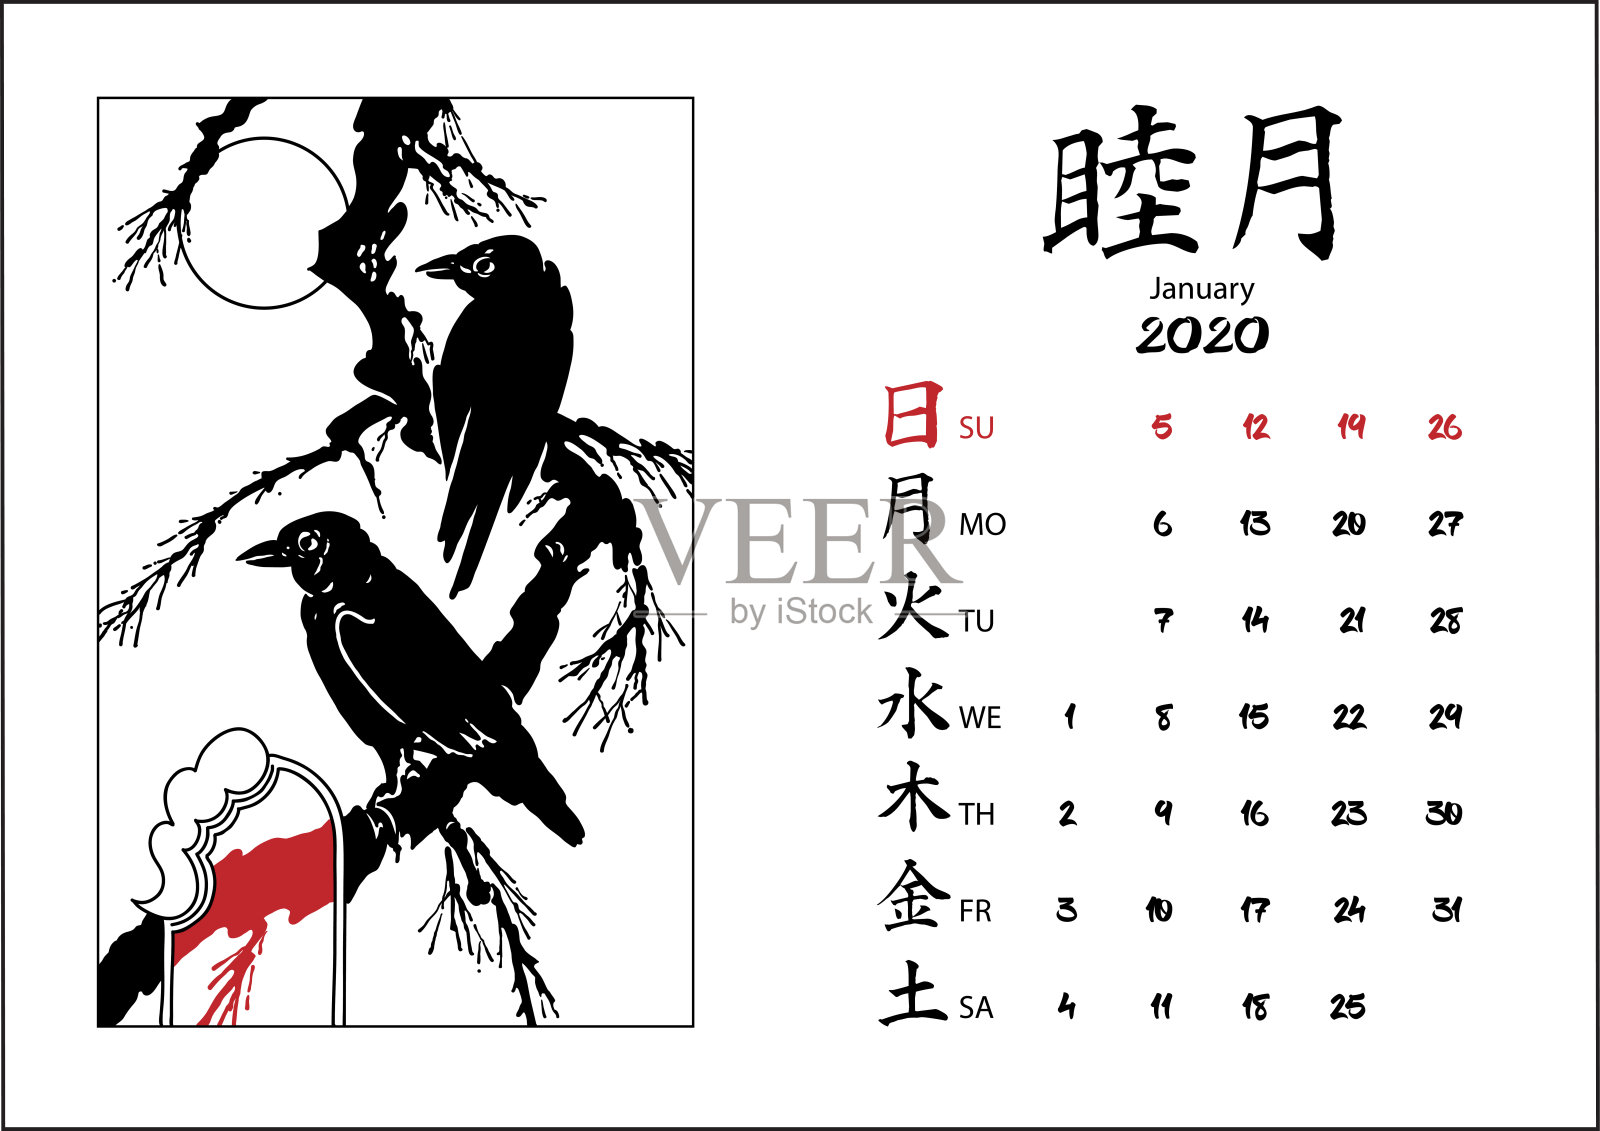 日历2020与日本插图。设计模板素材